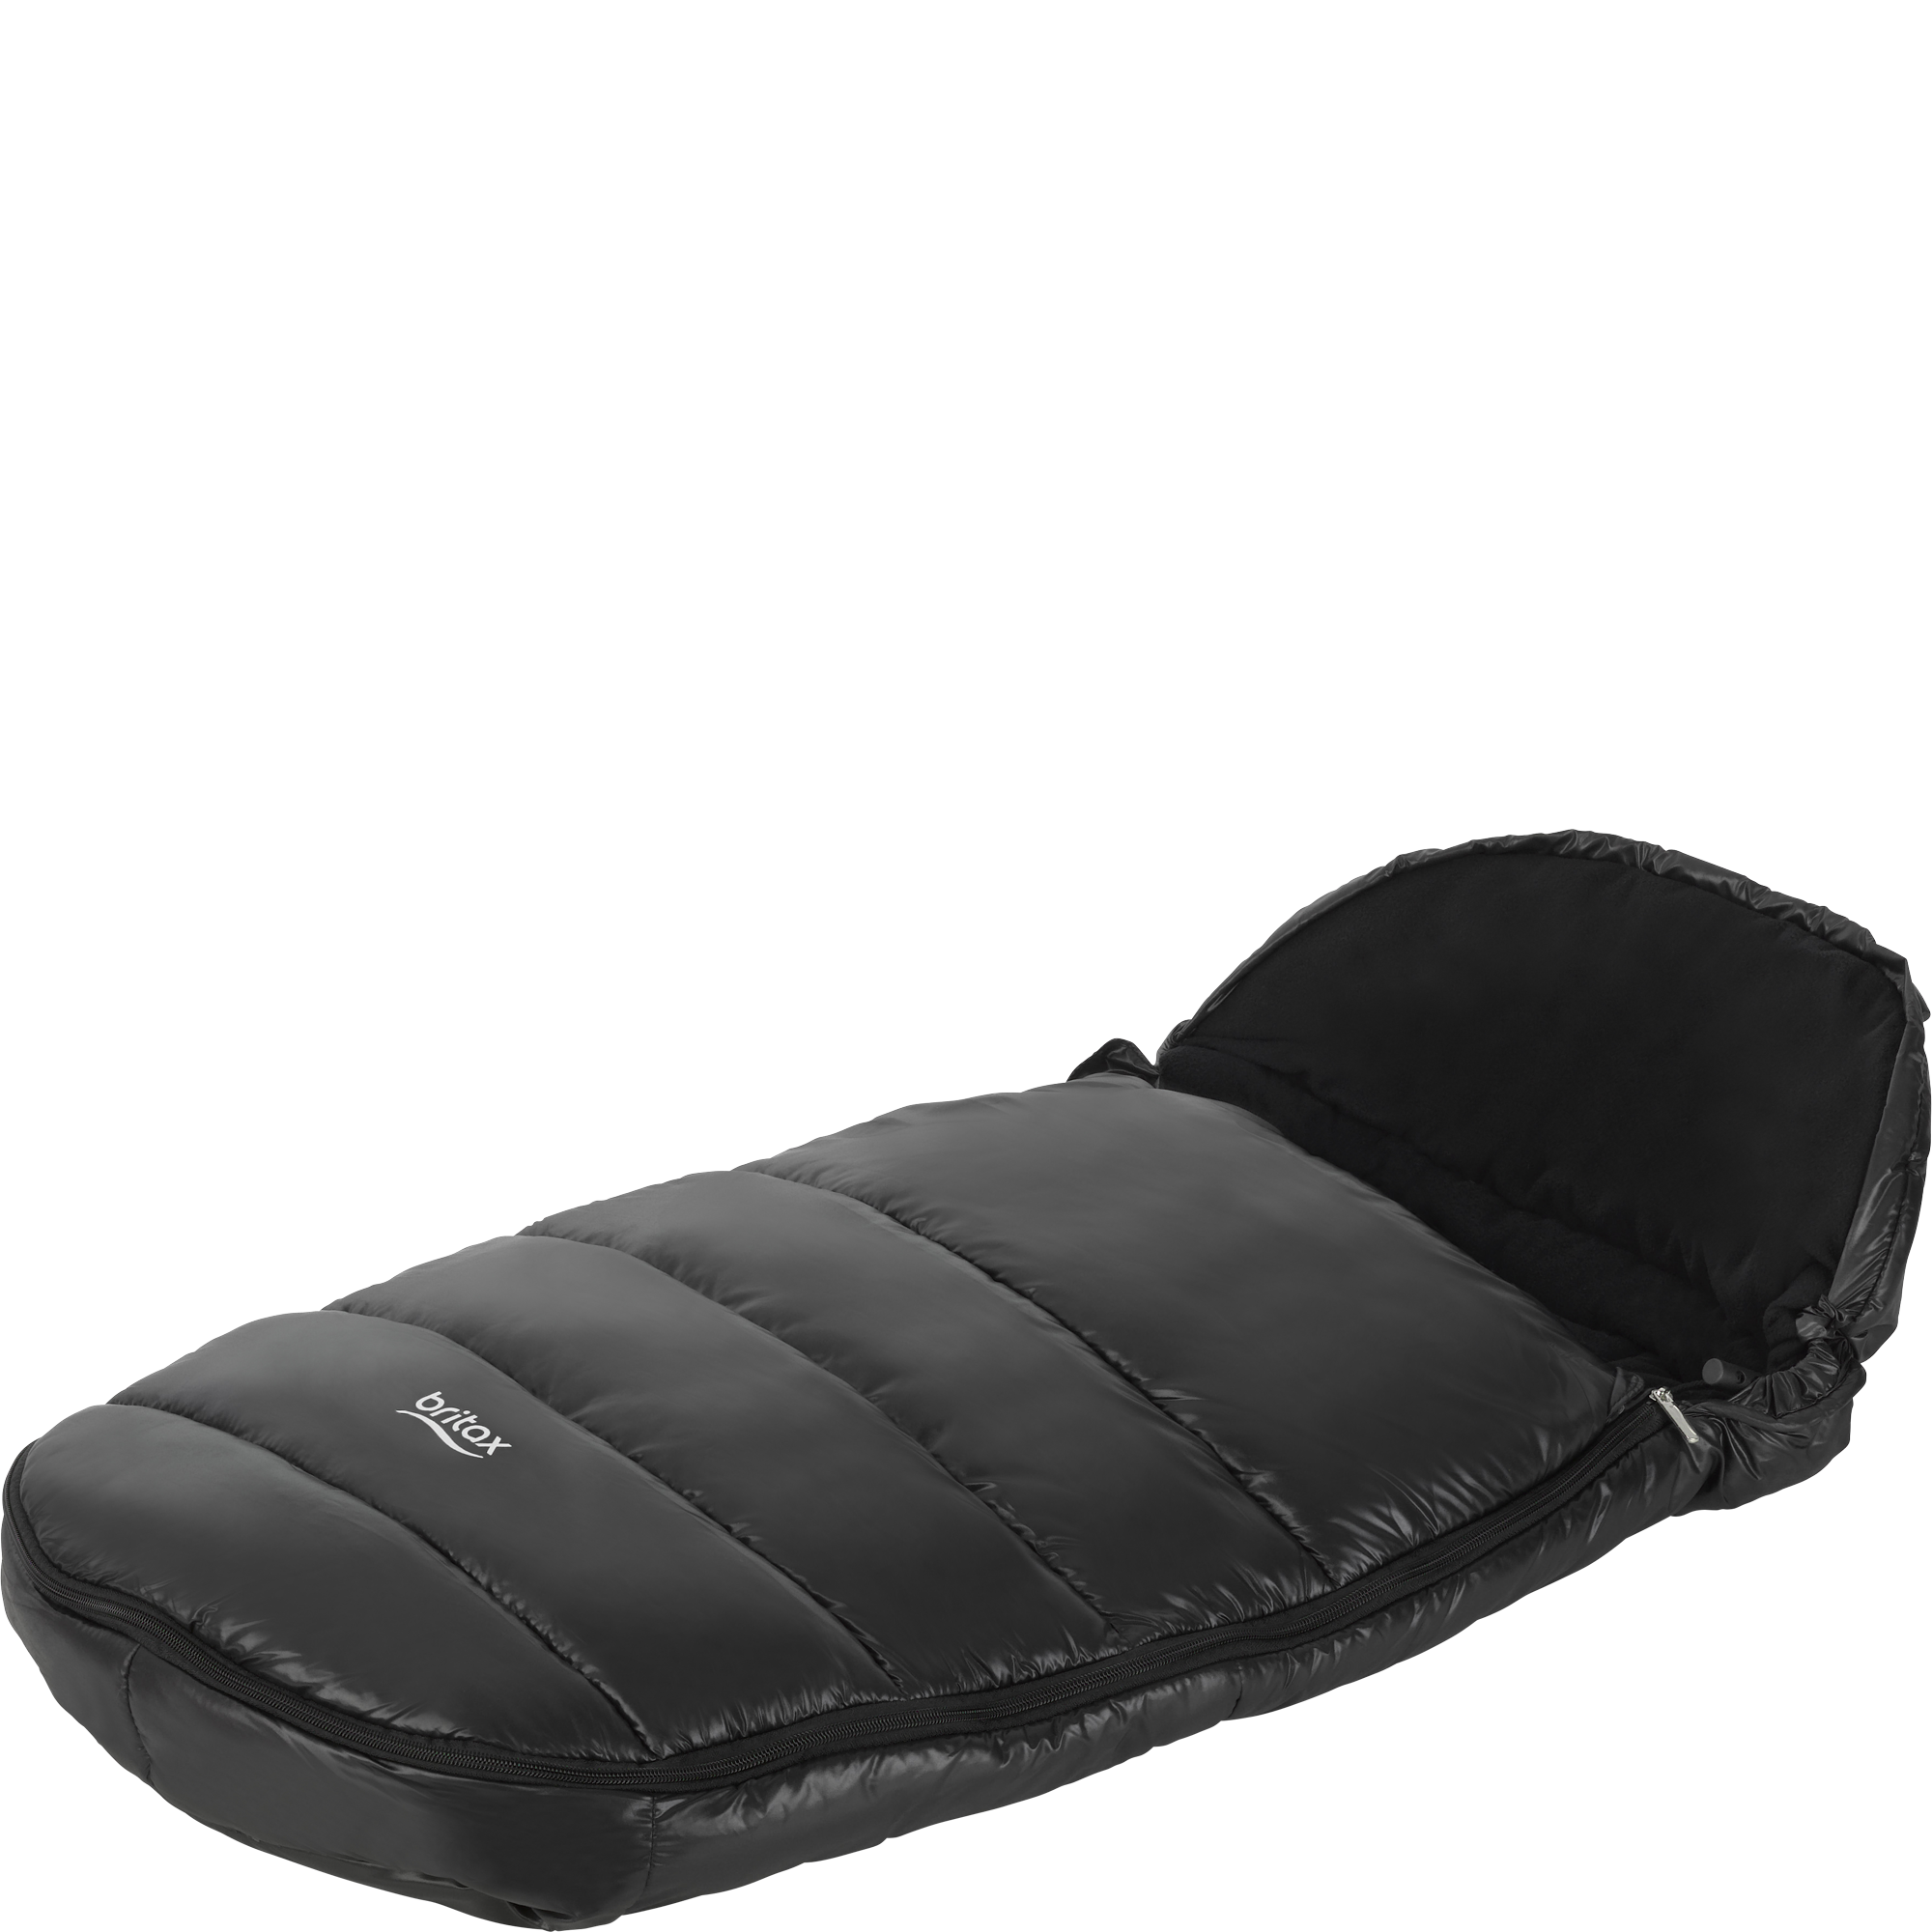 Manchon de pieds/cosy toes compatible avec britax puschair landau smart double mouvement agile 